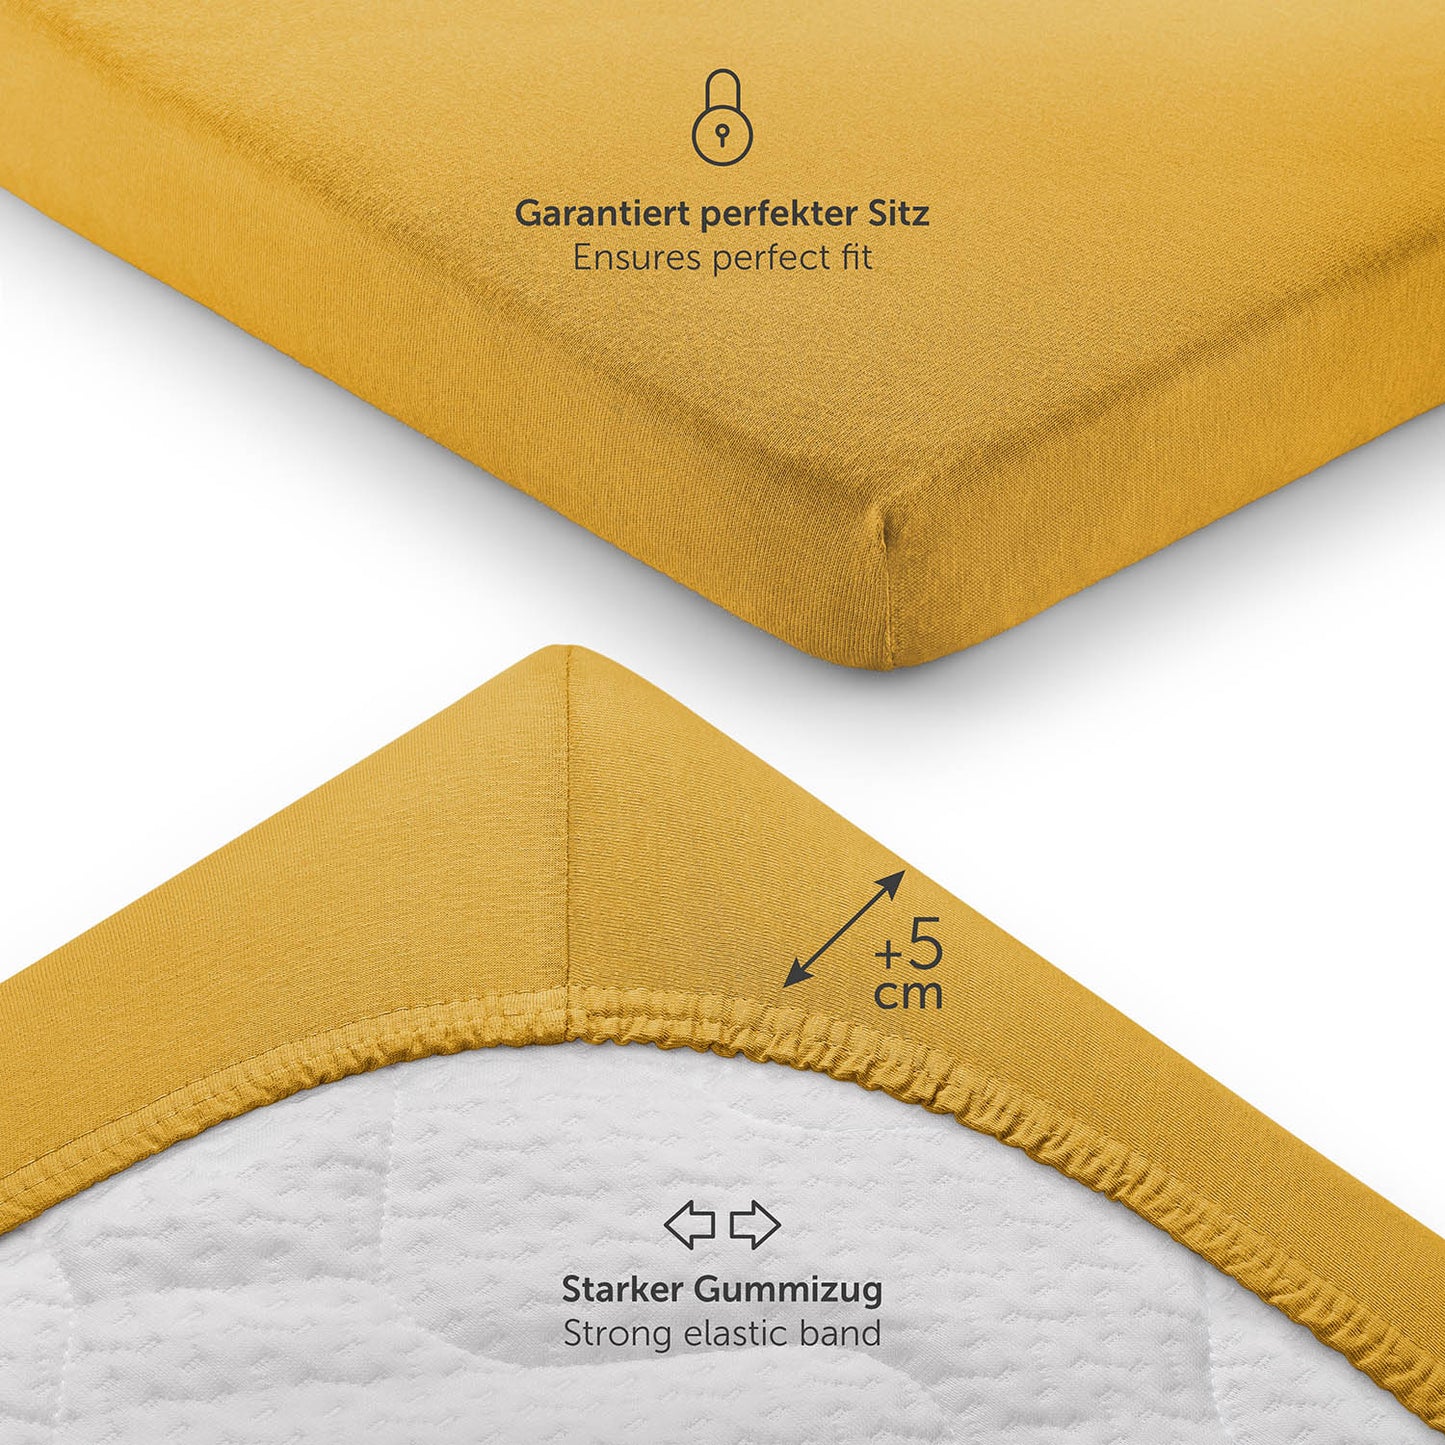 Detailansicht eines gelben Spannbettlakens mit Fokus auf den starken Gummizug und zusätzlichen 5 cm Höhe für perfekten Sitz